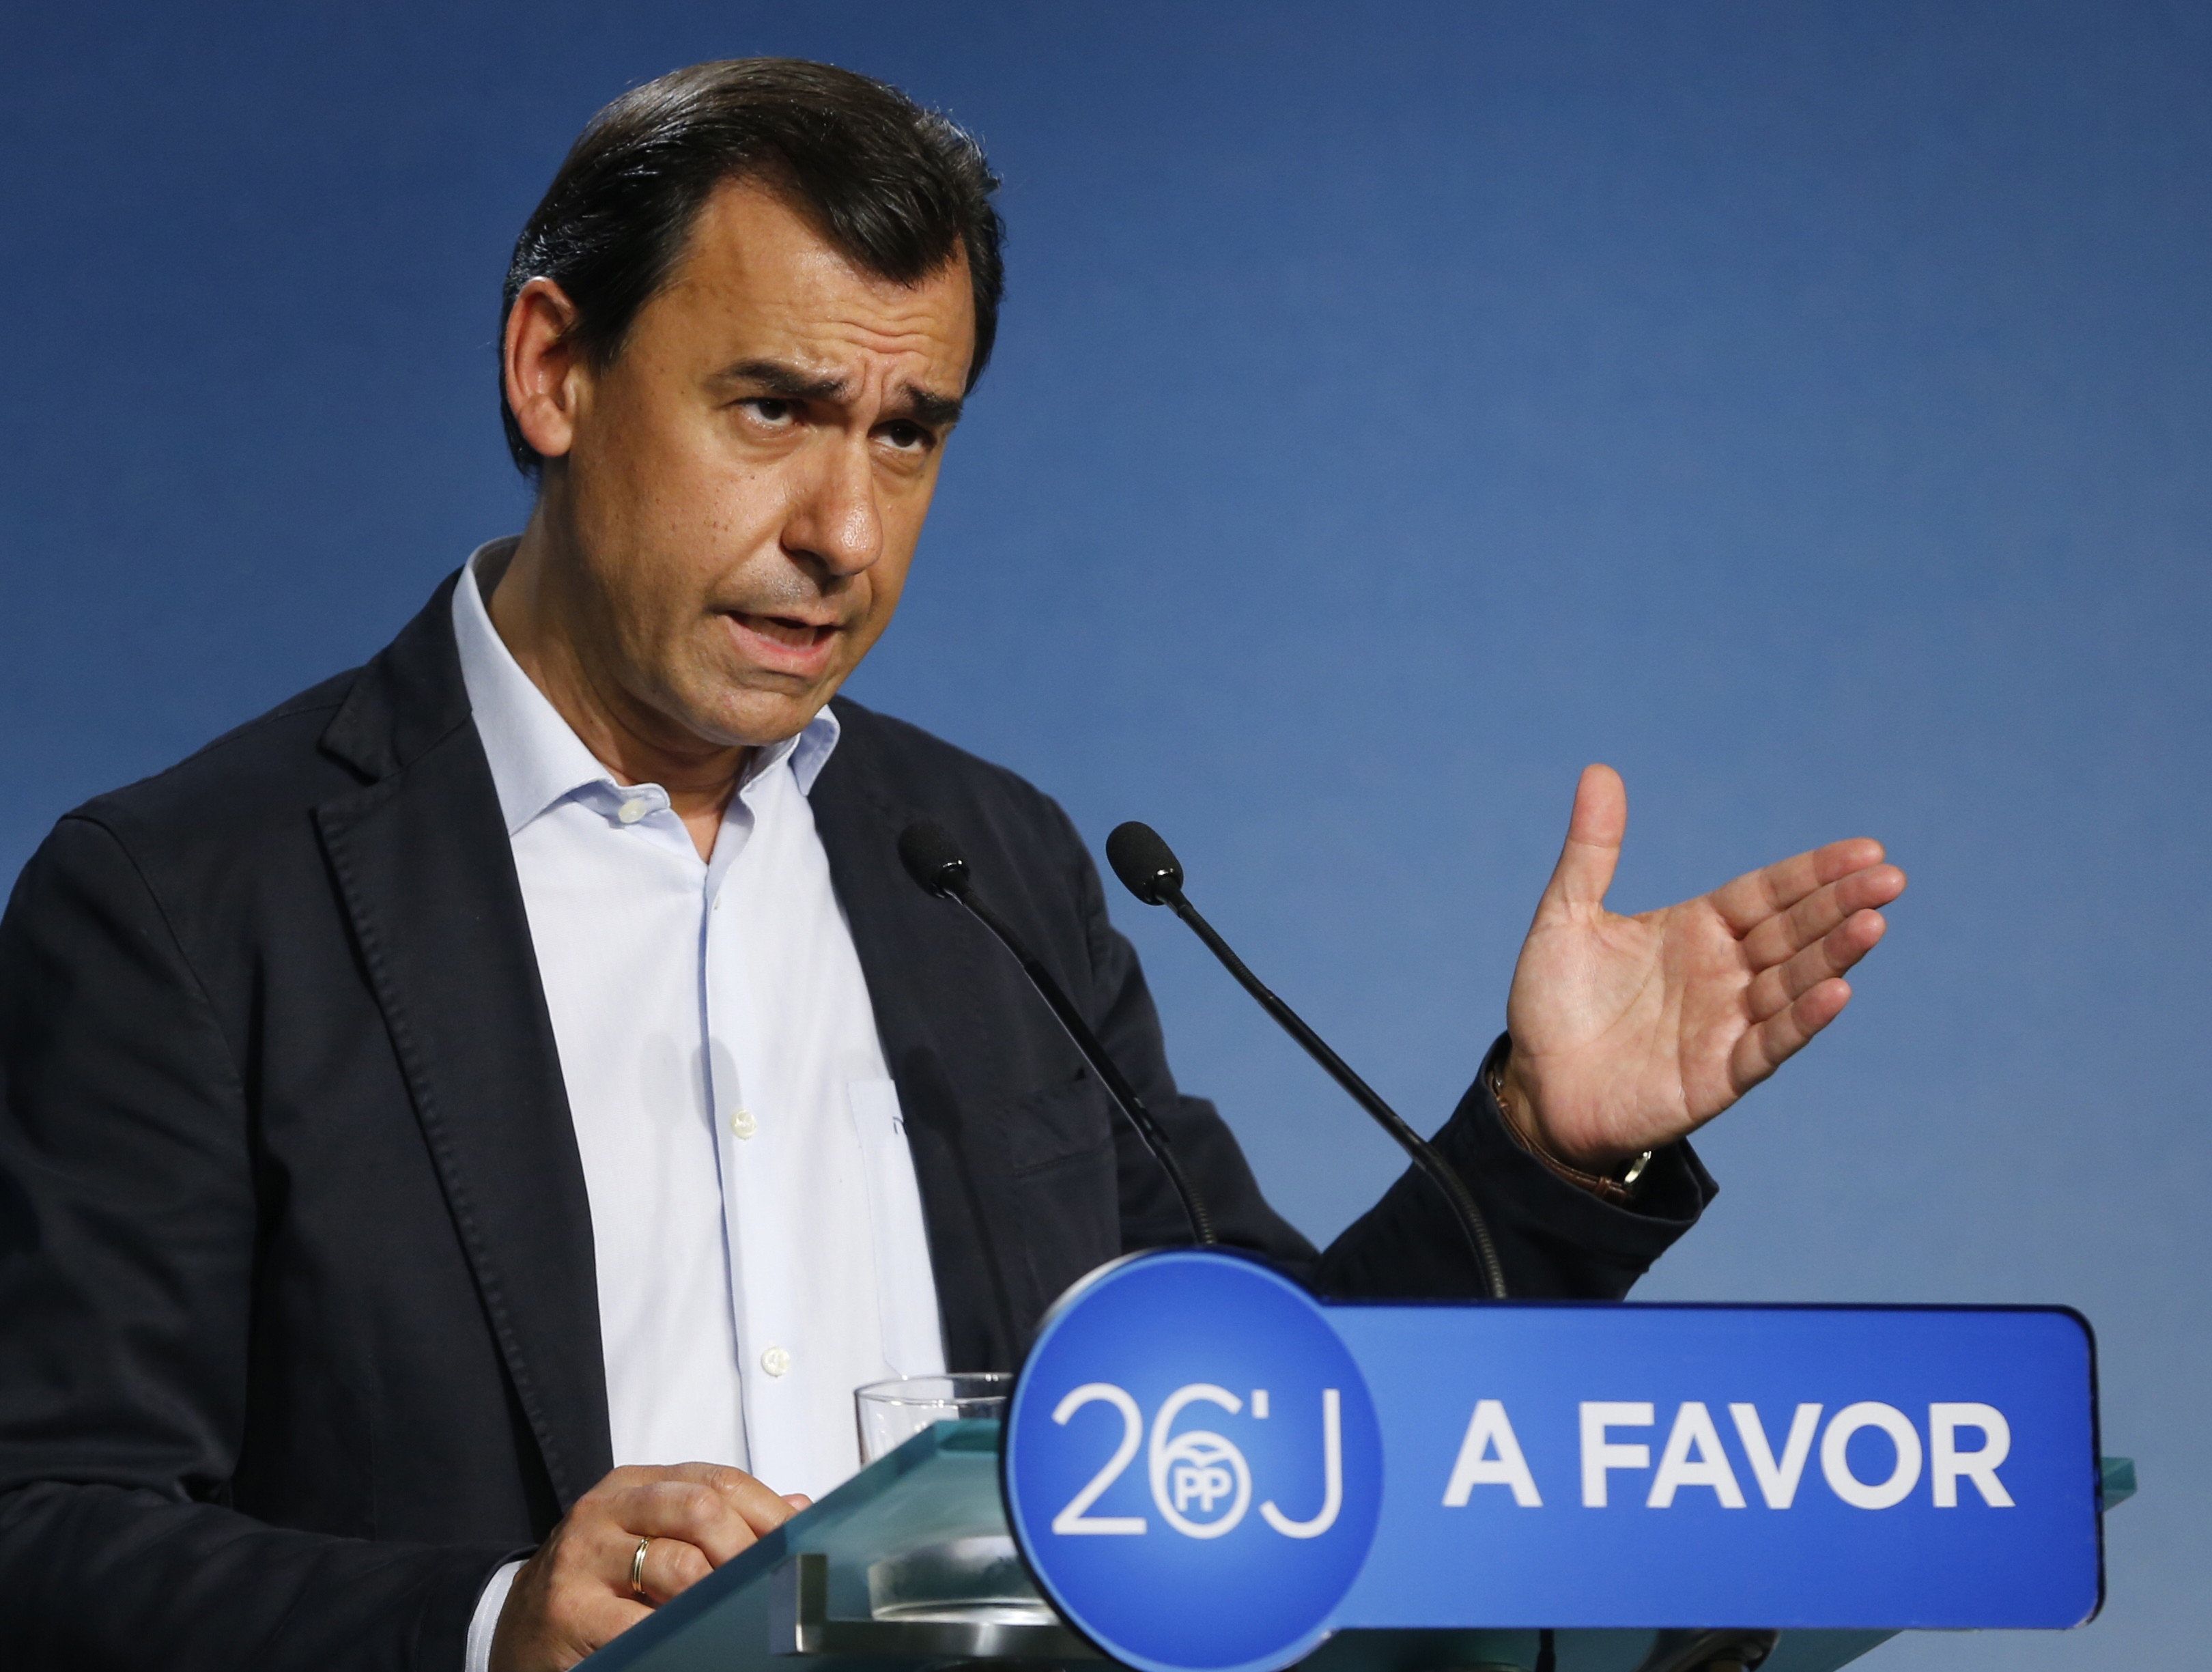 El PP presiona a Sánchez antes de la reunión: "No a Rajoy es Sí a elecciones"